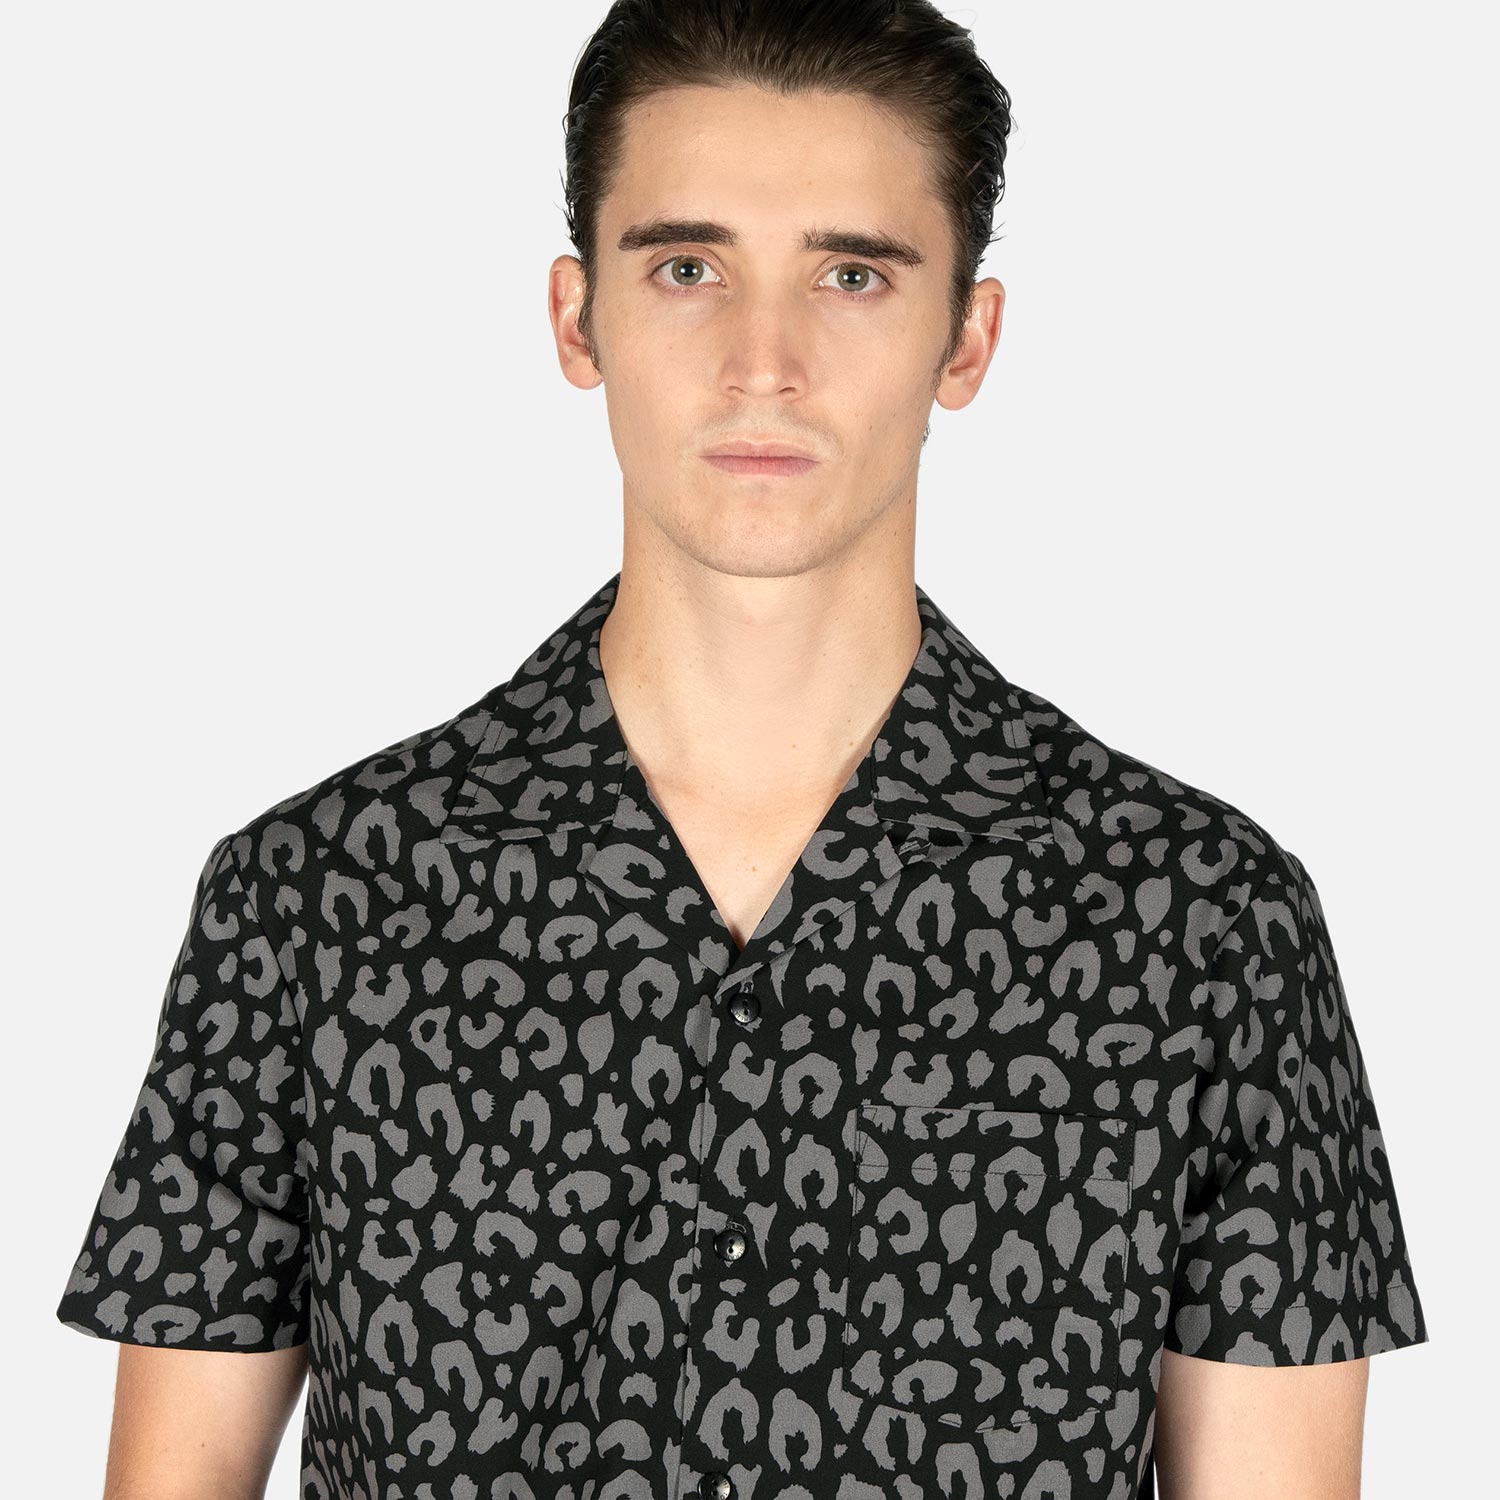 Boss Leopard - Black and Grey Leopard Print Shirt (Size XS, S, M, L, XL ...